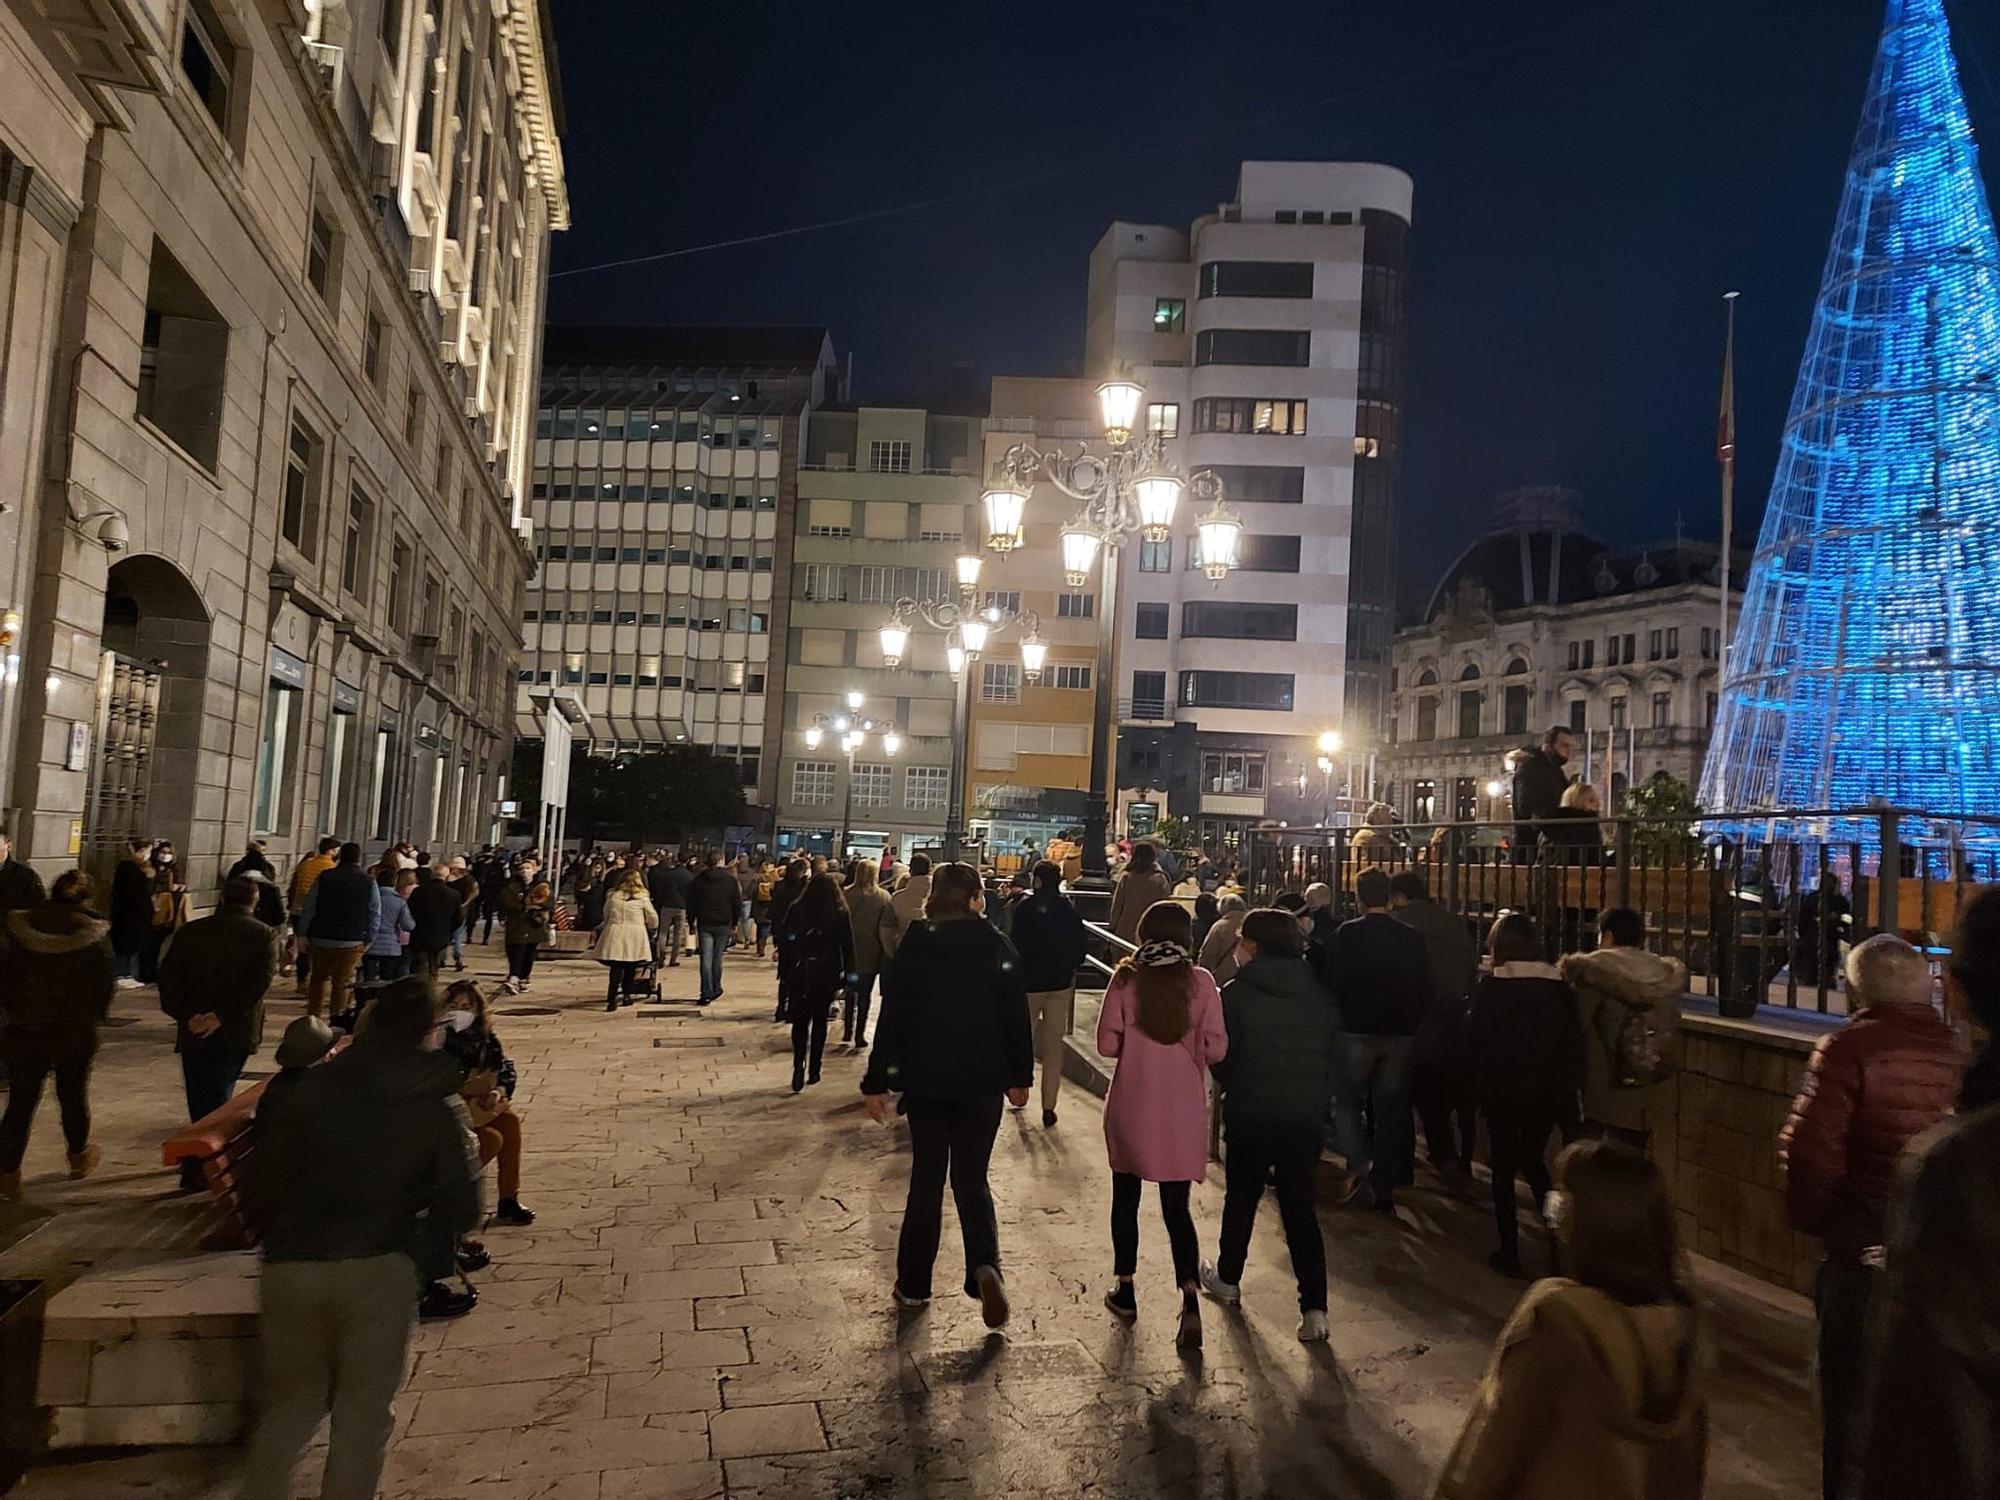 Aglomeraciones en Oviedo para ver la iluminación de las calles y hacer compras navideñas